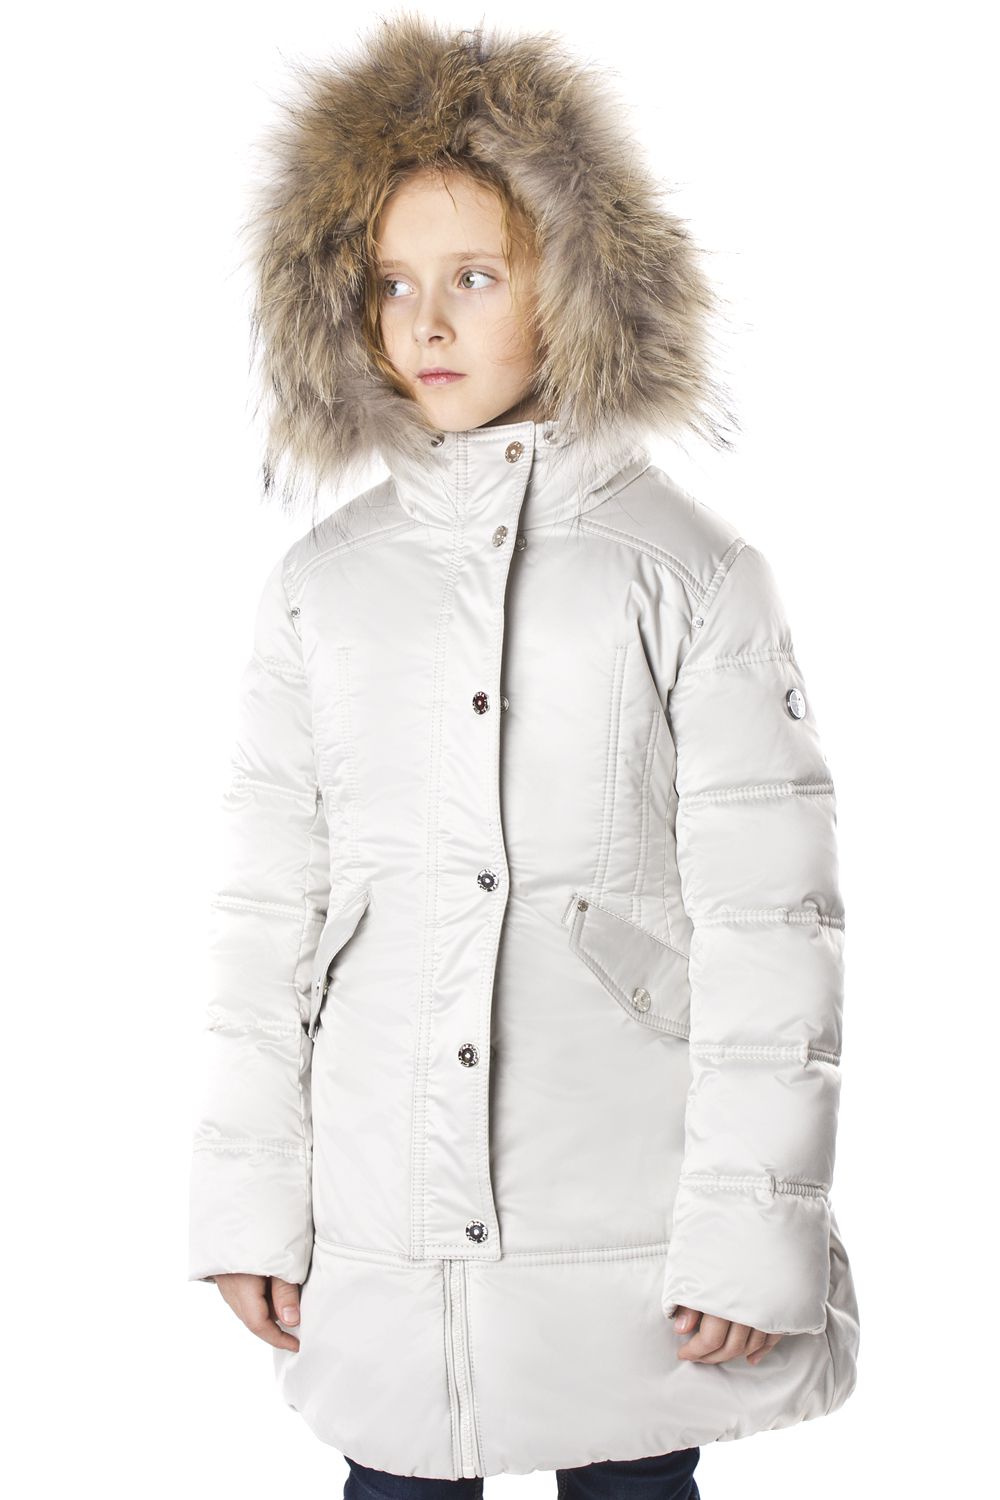 Пальто Pulka, размер 158, цвет белый PUFWG-626-20324-203 - фото 1